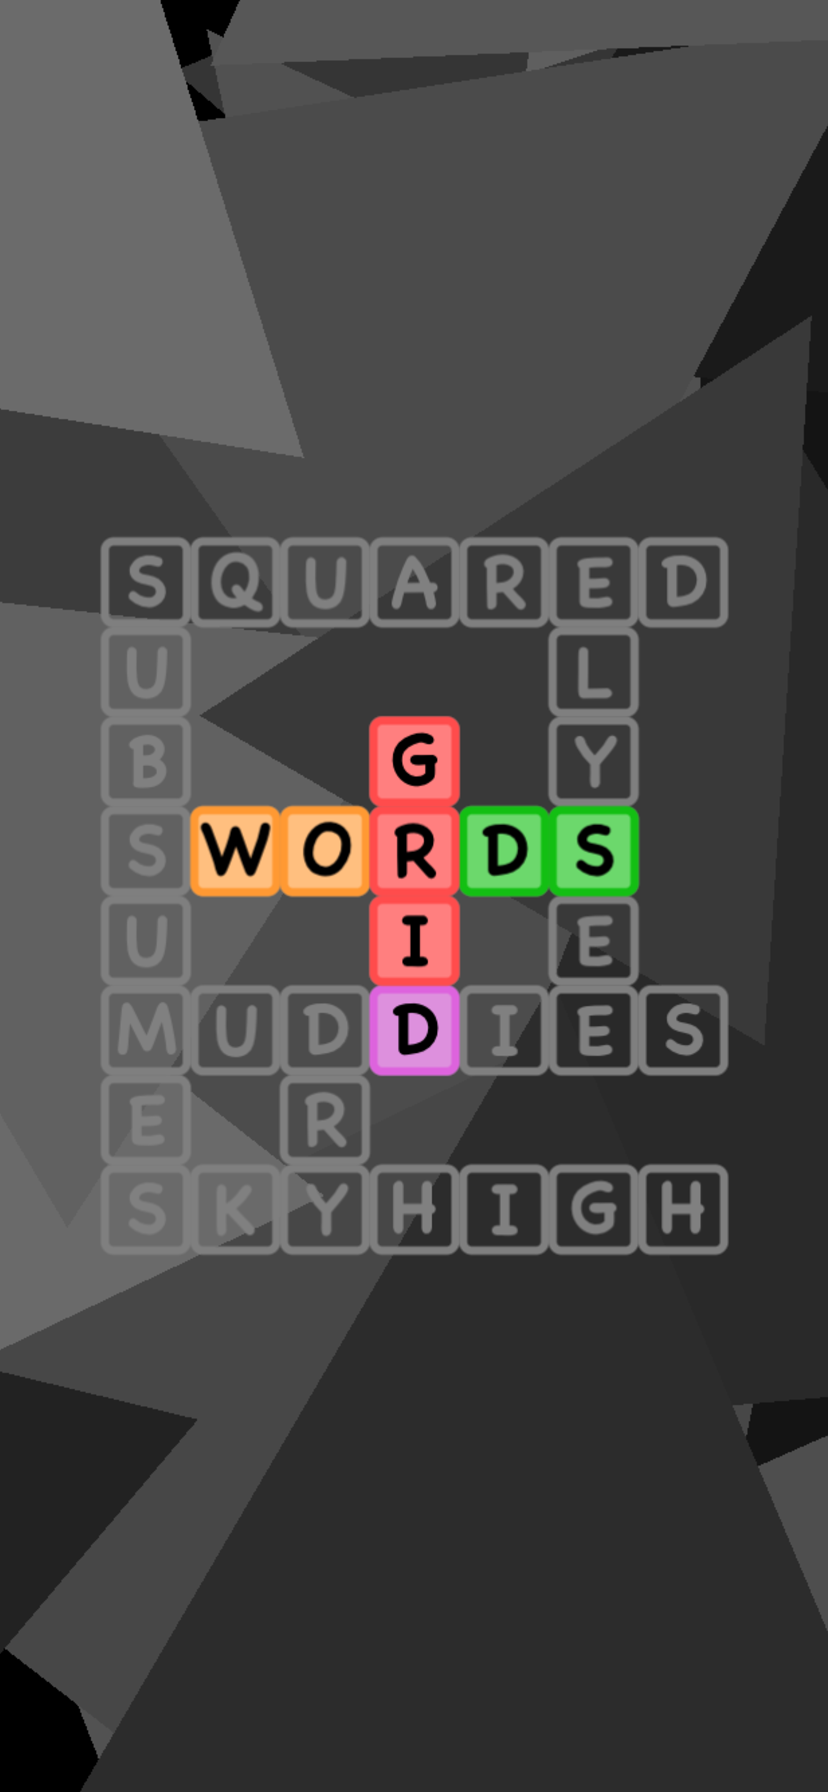 Grid Words app example screen